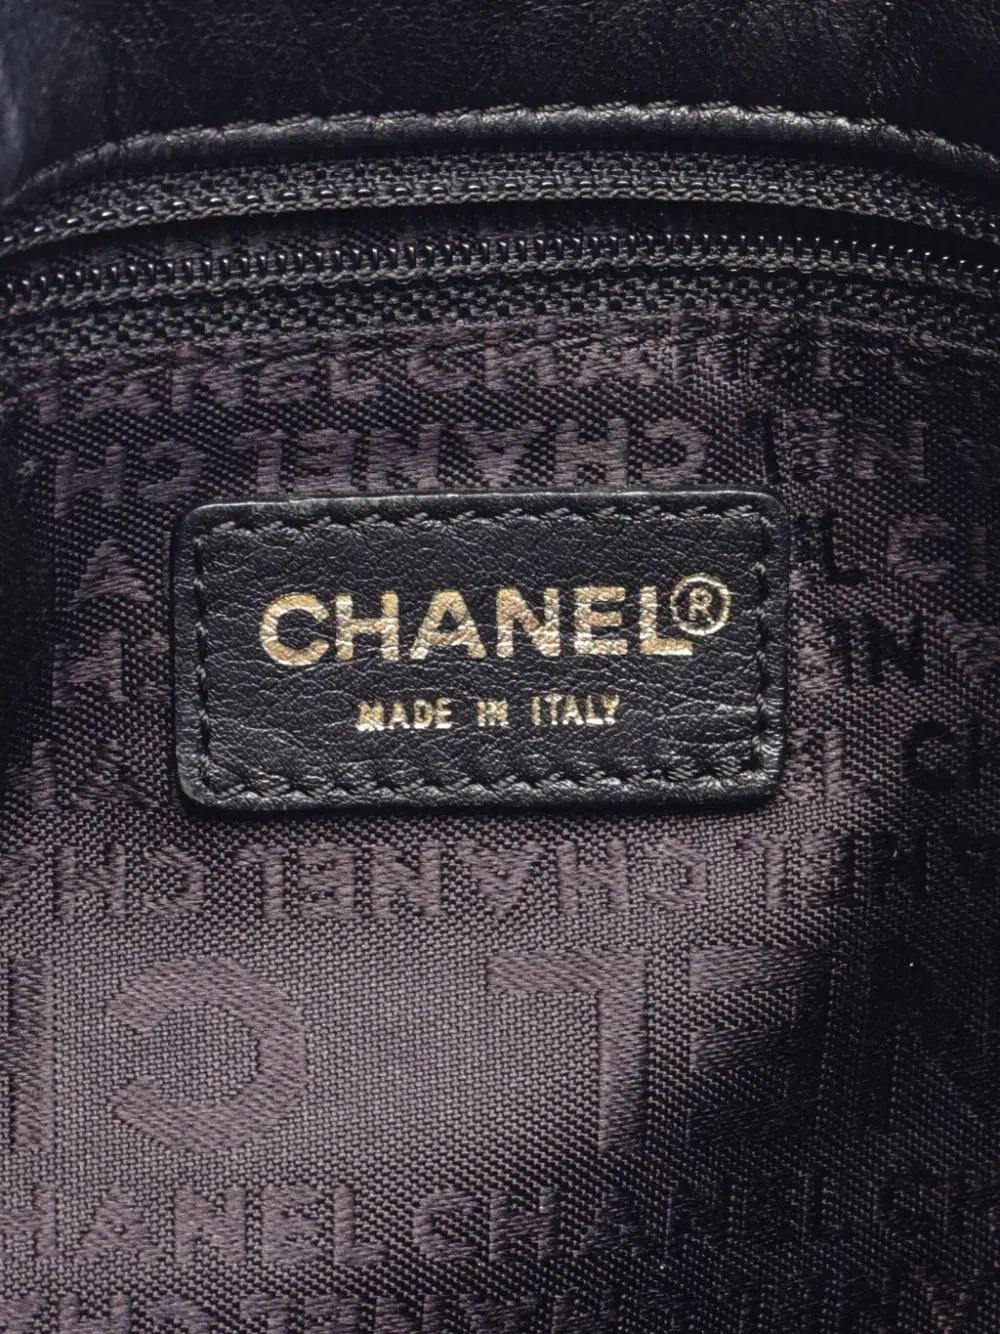 Chanel 2002 Vintage Calfskin Leather Hobo Shoulder Tote Bag 5